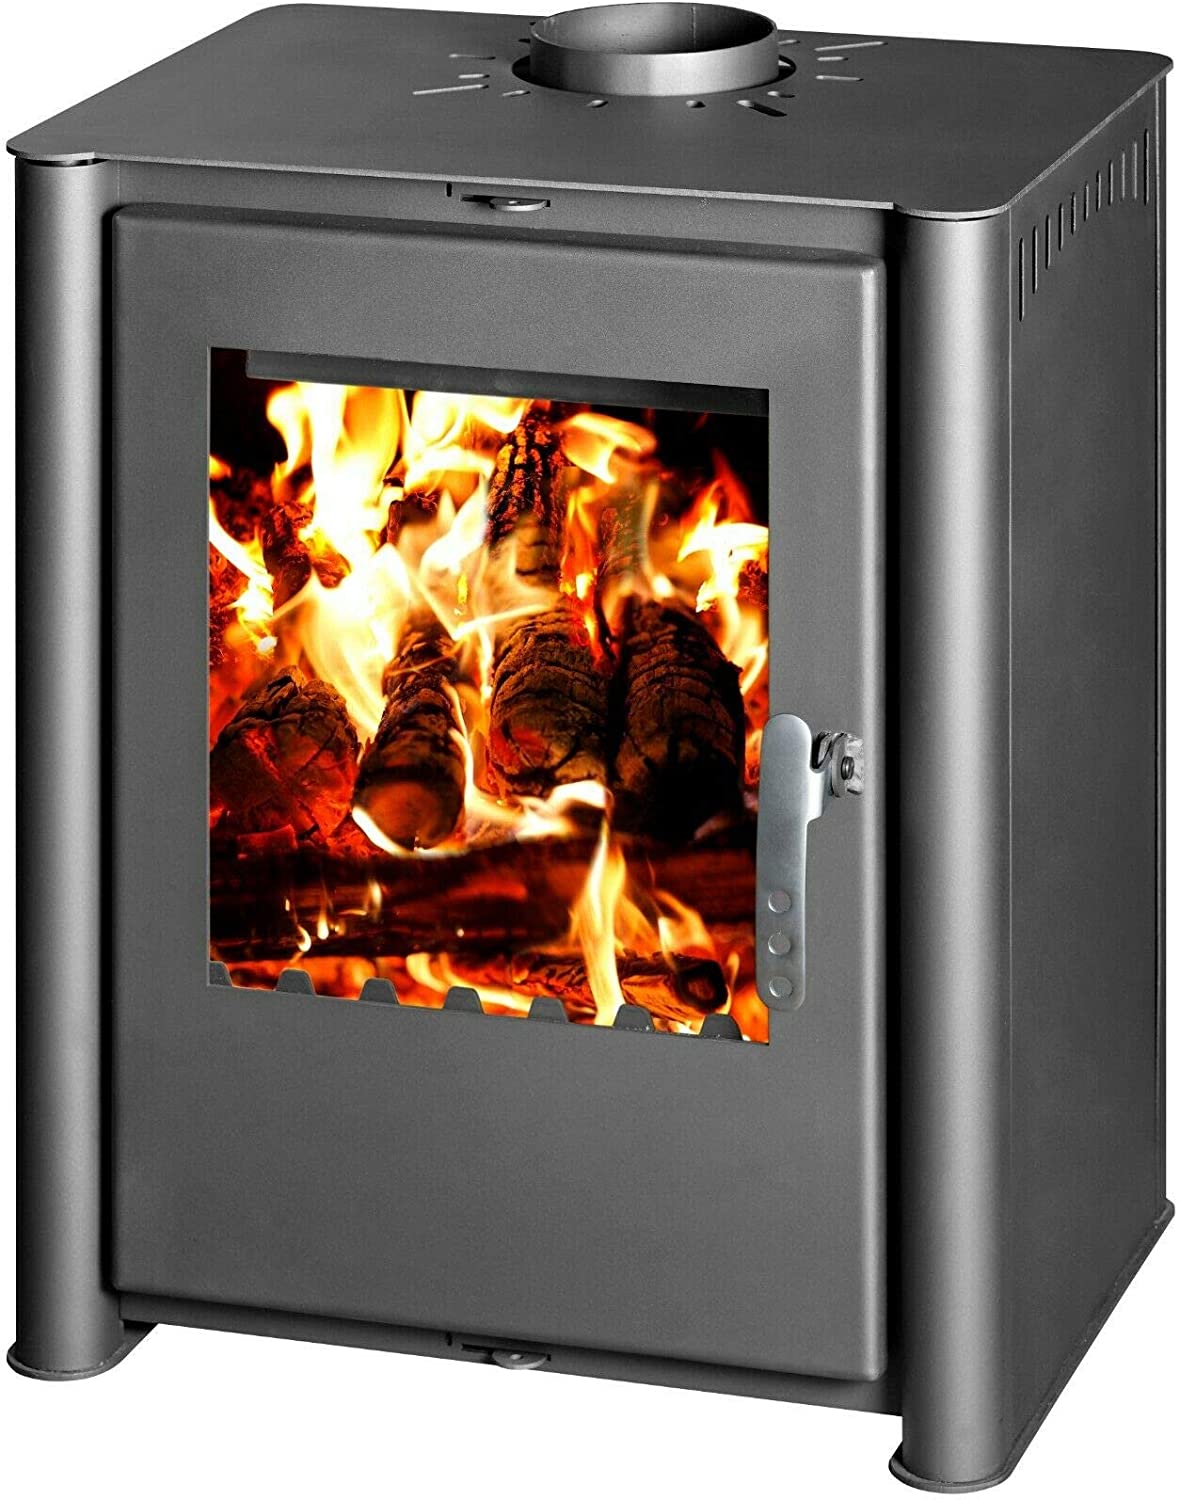 Fireplace Warehouse Etc Inspirational Wood Burning Stove Fireplace Log Burner 10 15 Kw Heating